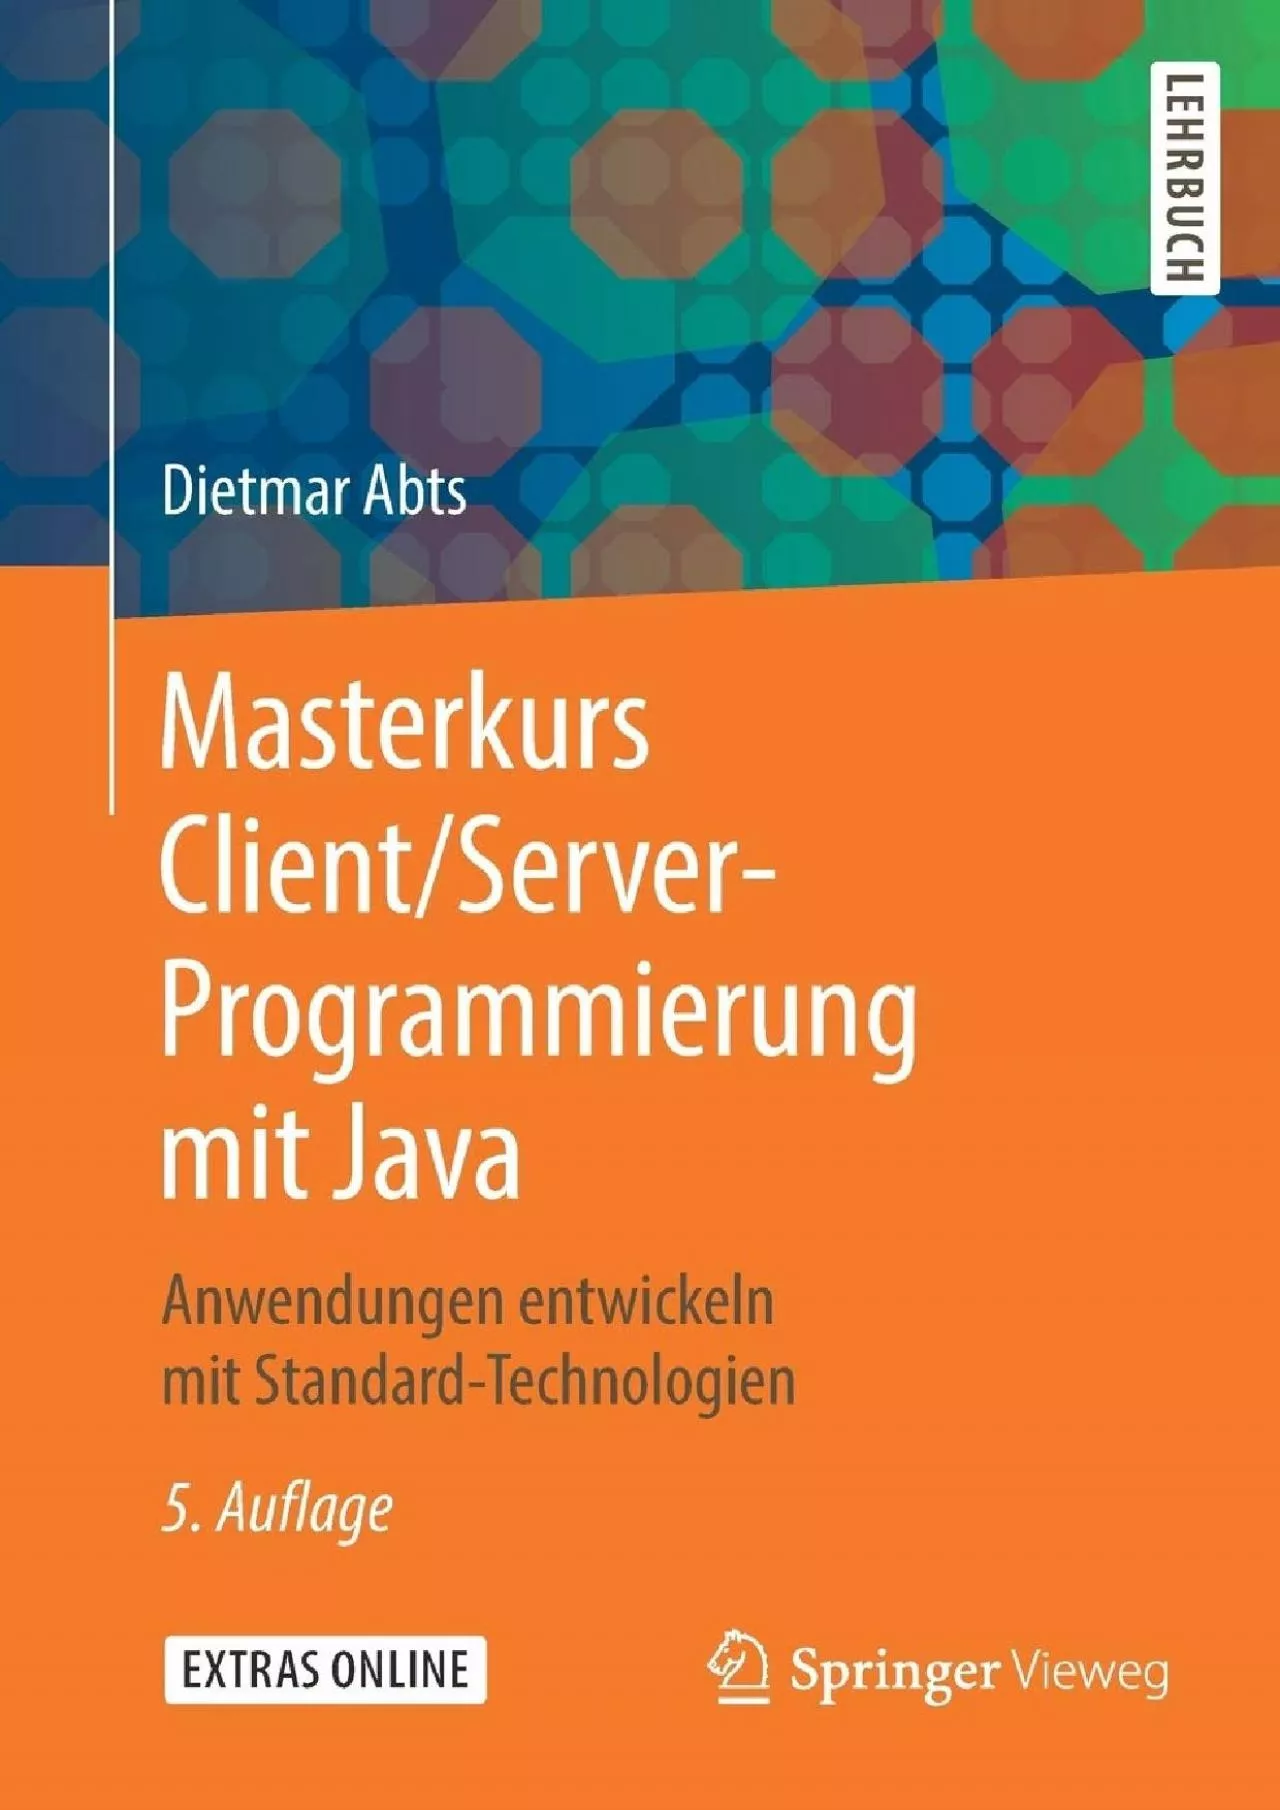 [FREE]-Masterkurs ClientServer-Programmierung mit Java: Anwendungen entwickeln mit Standard-Technologien